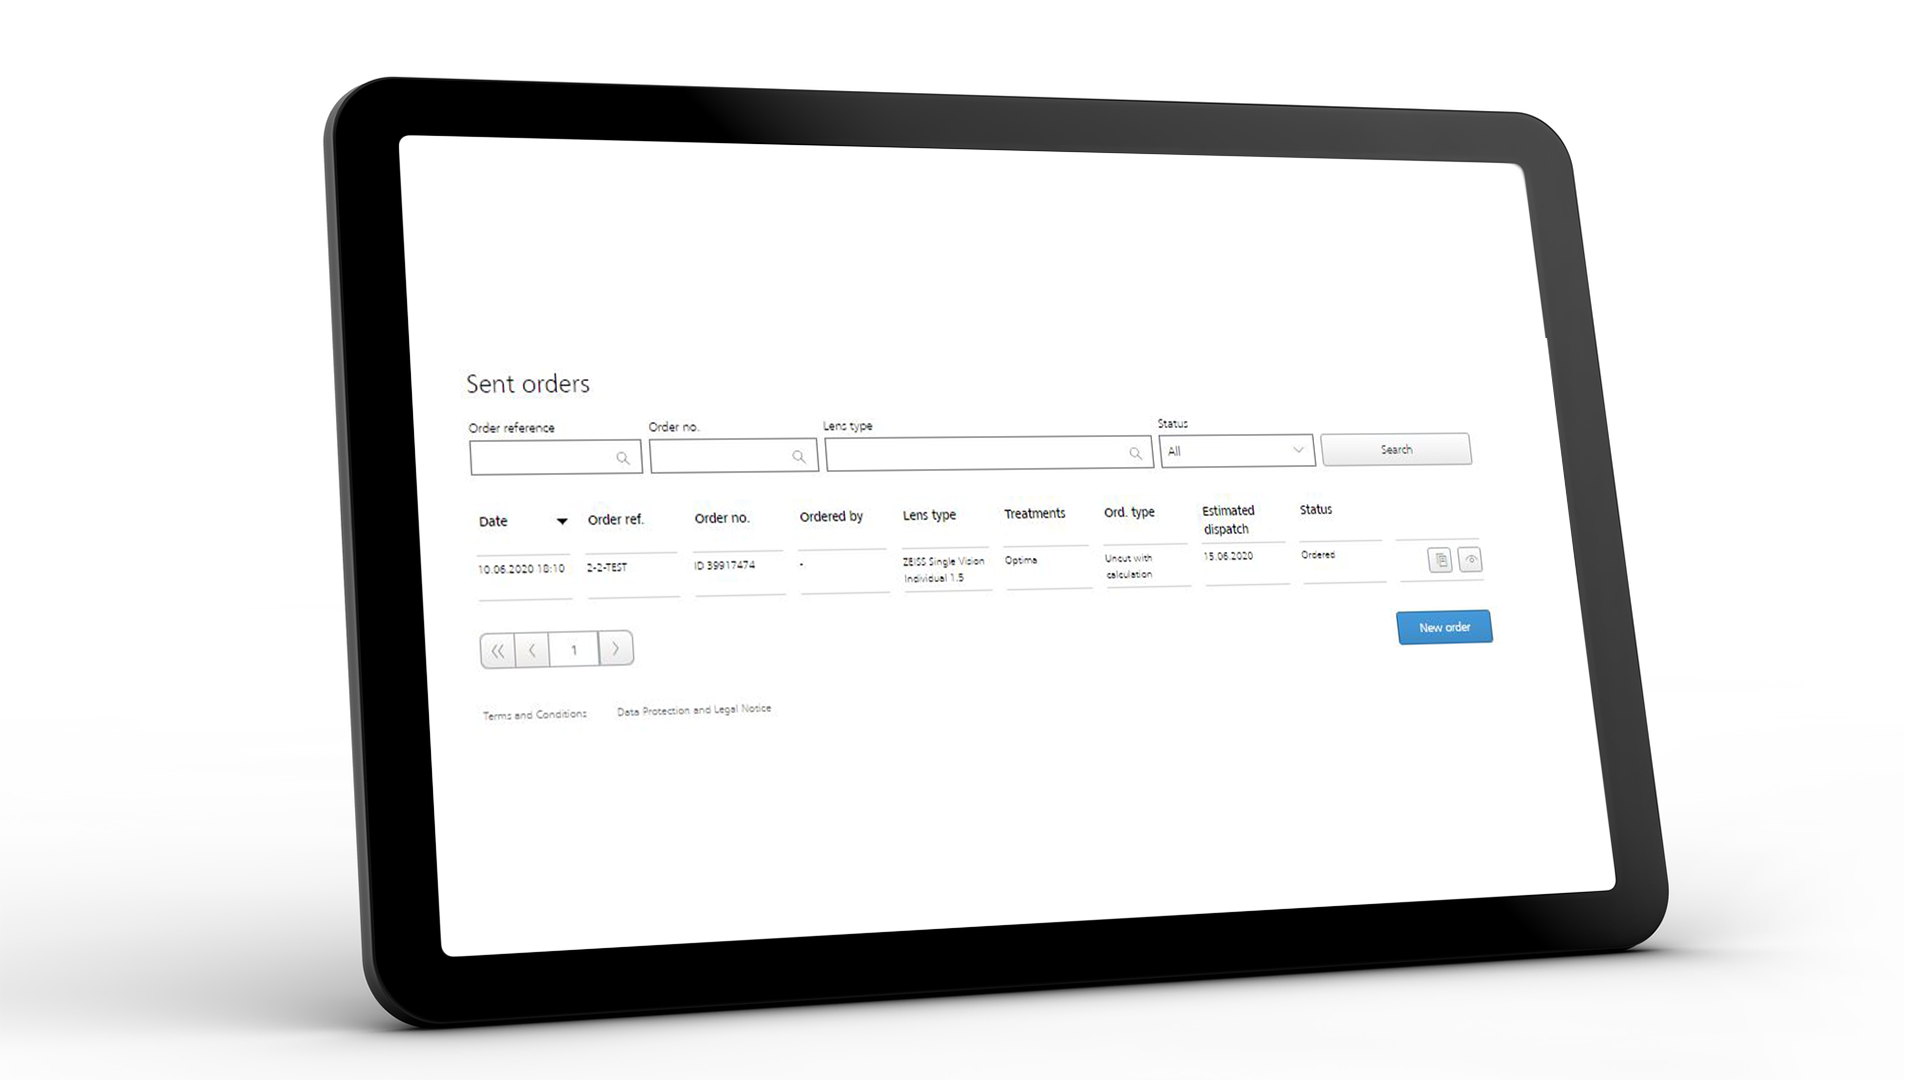 Ekran tabletu pokazujący interfejs ZEISS VISUSTORE dla wysłanych zamówień 